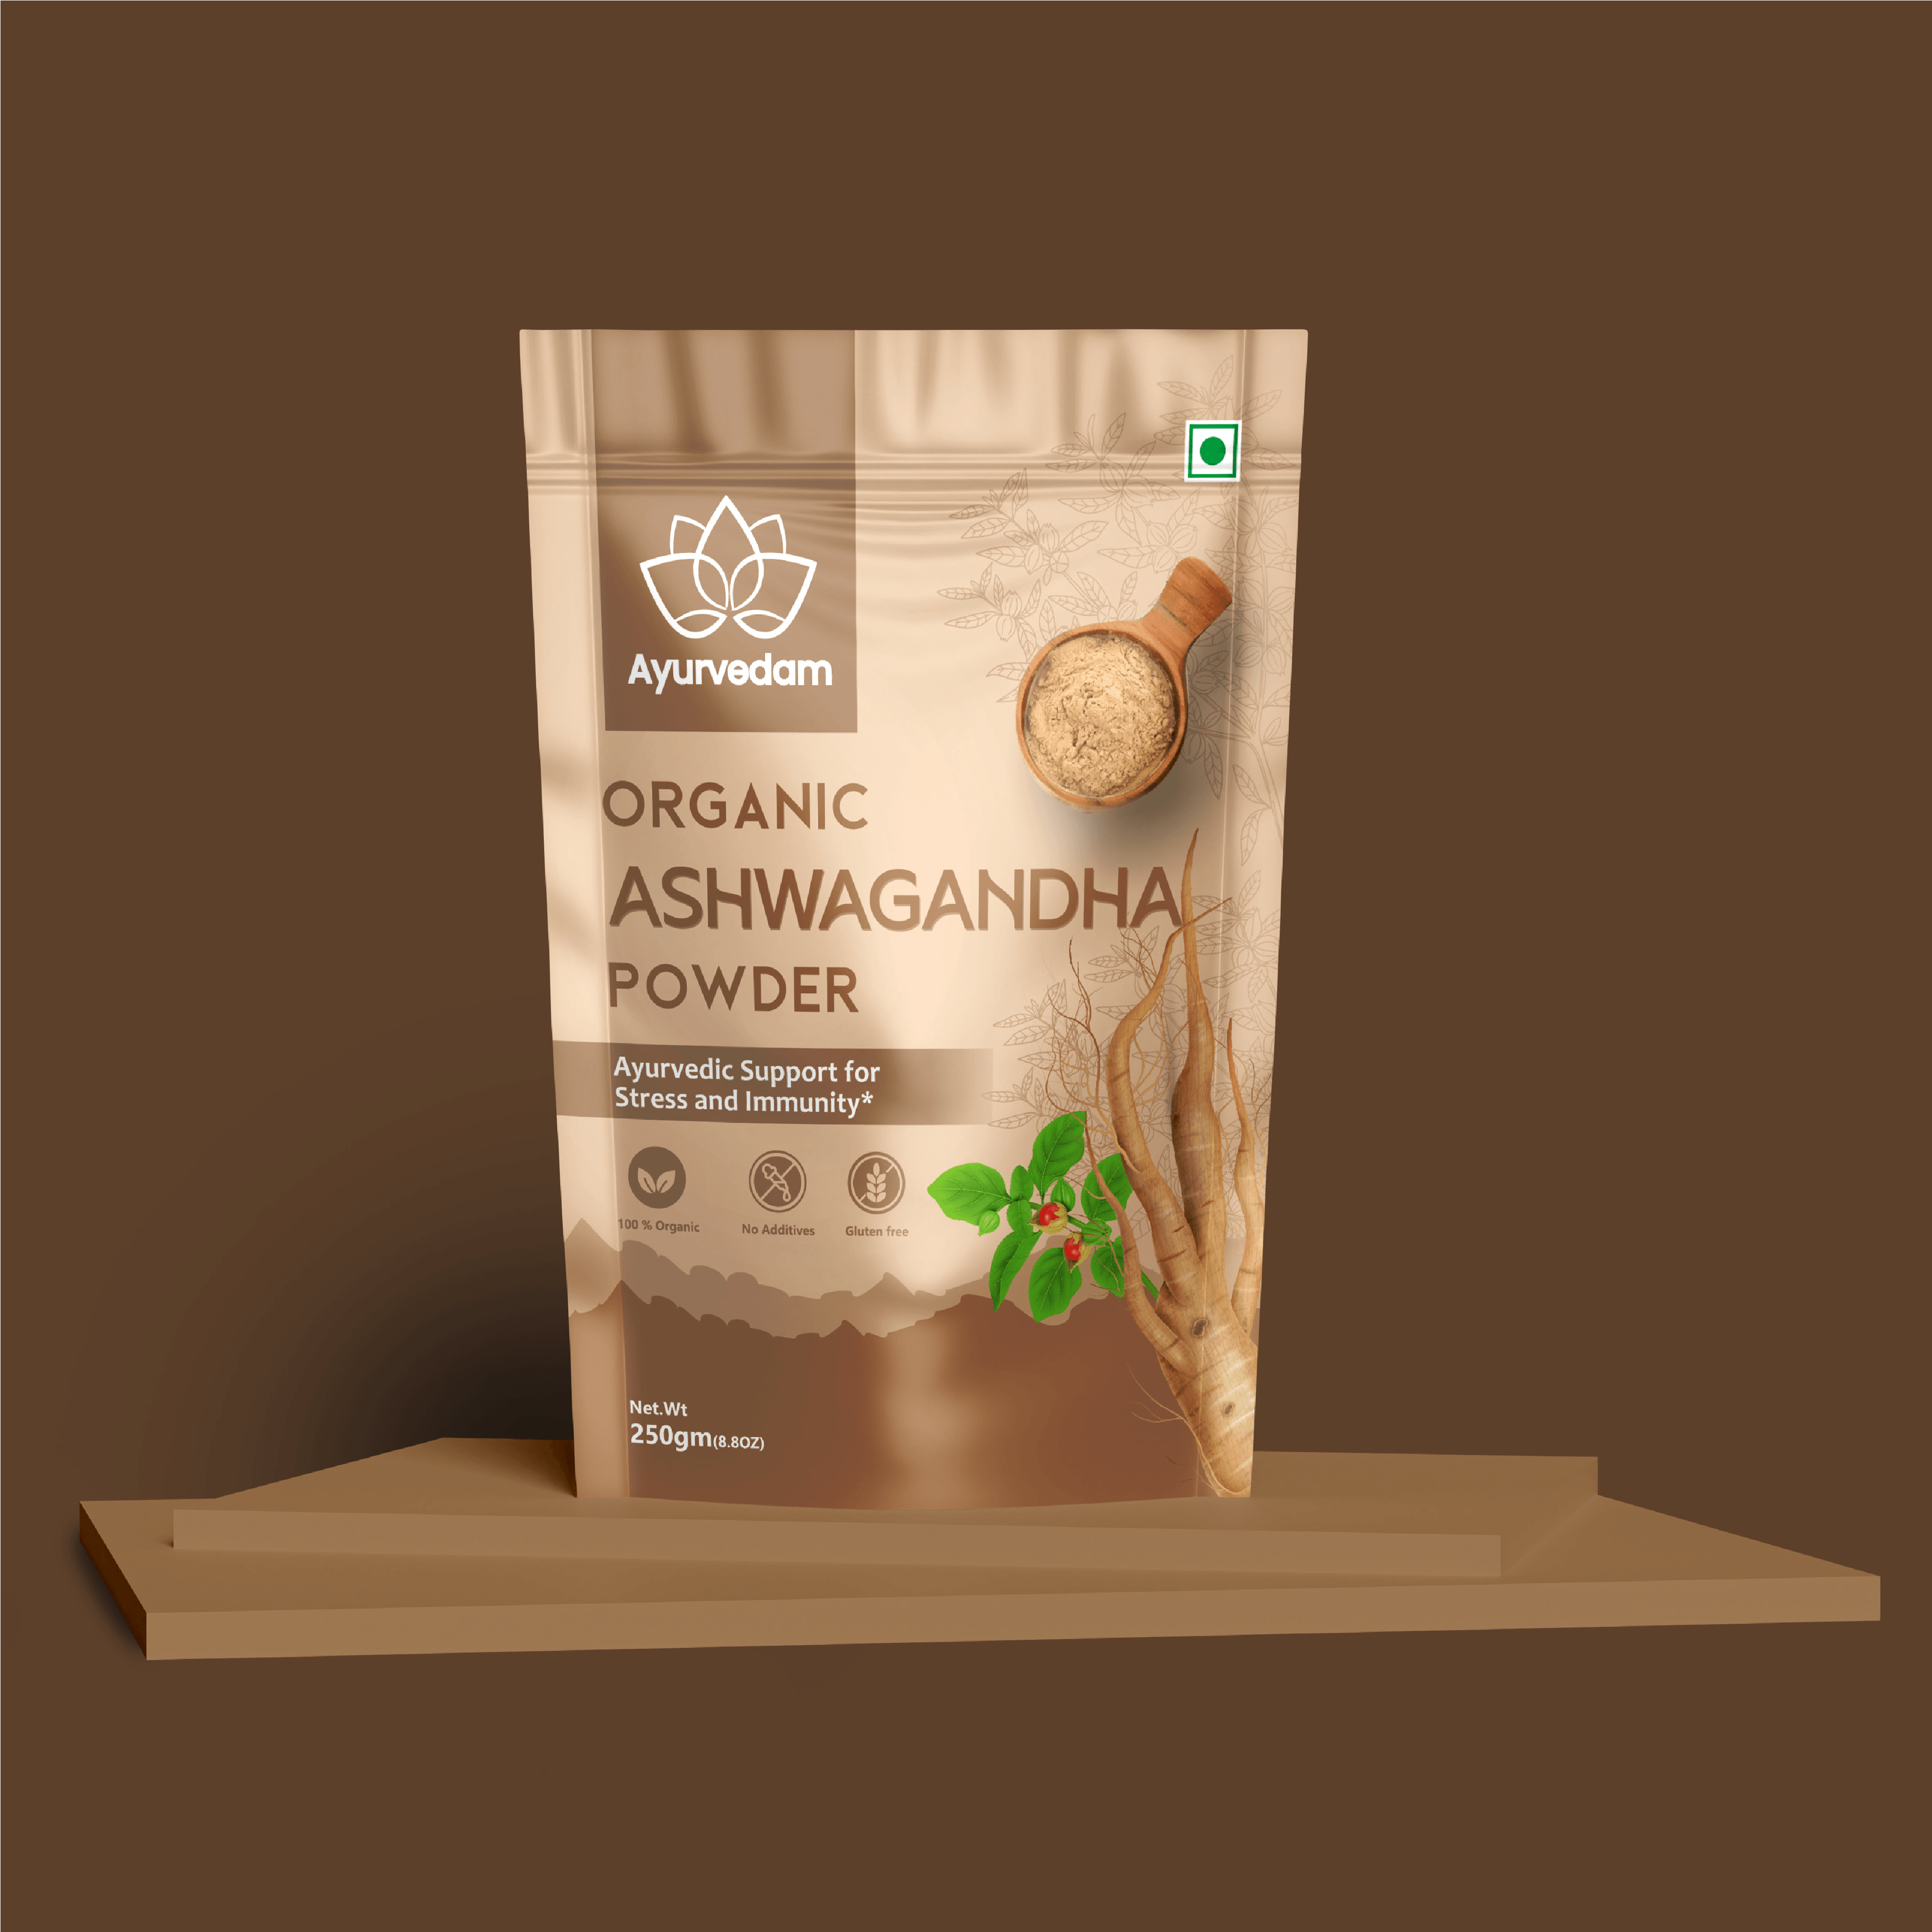 Organic Powder Packaging Design Ayurvedam